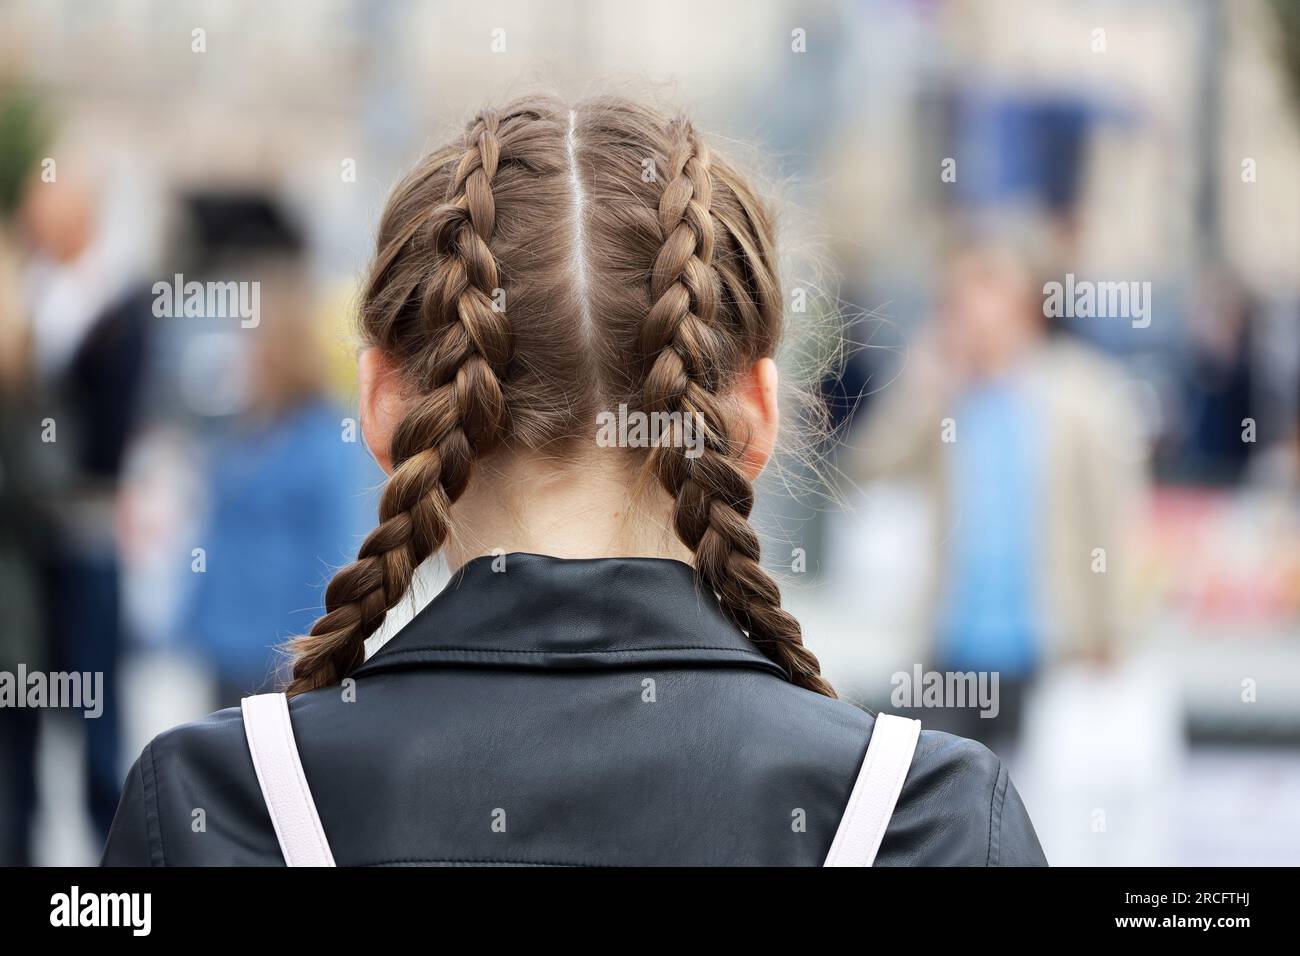 Ein Mädchen mit geflochtenen Zöpfen, das eine Lederjacke auf der Straße trägt. Weibliche Frisur und Mode in der Stadt Stockfoto